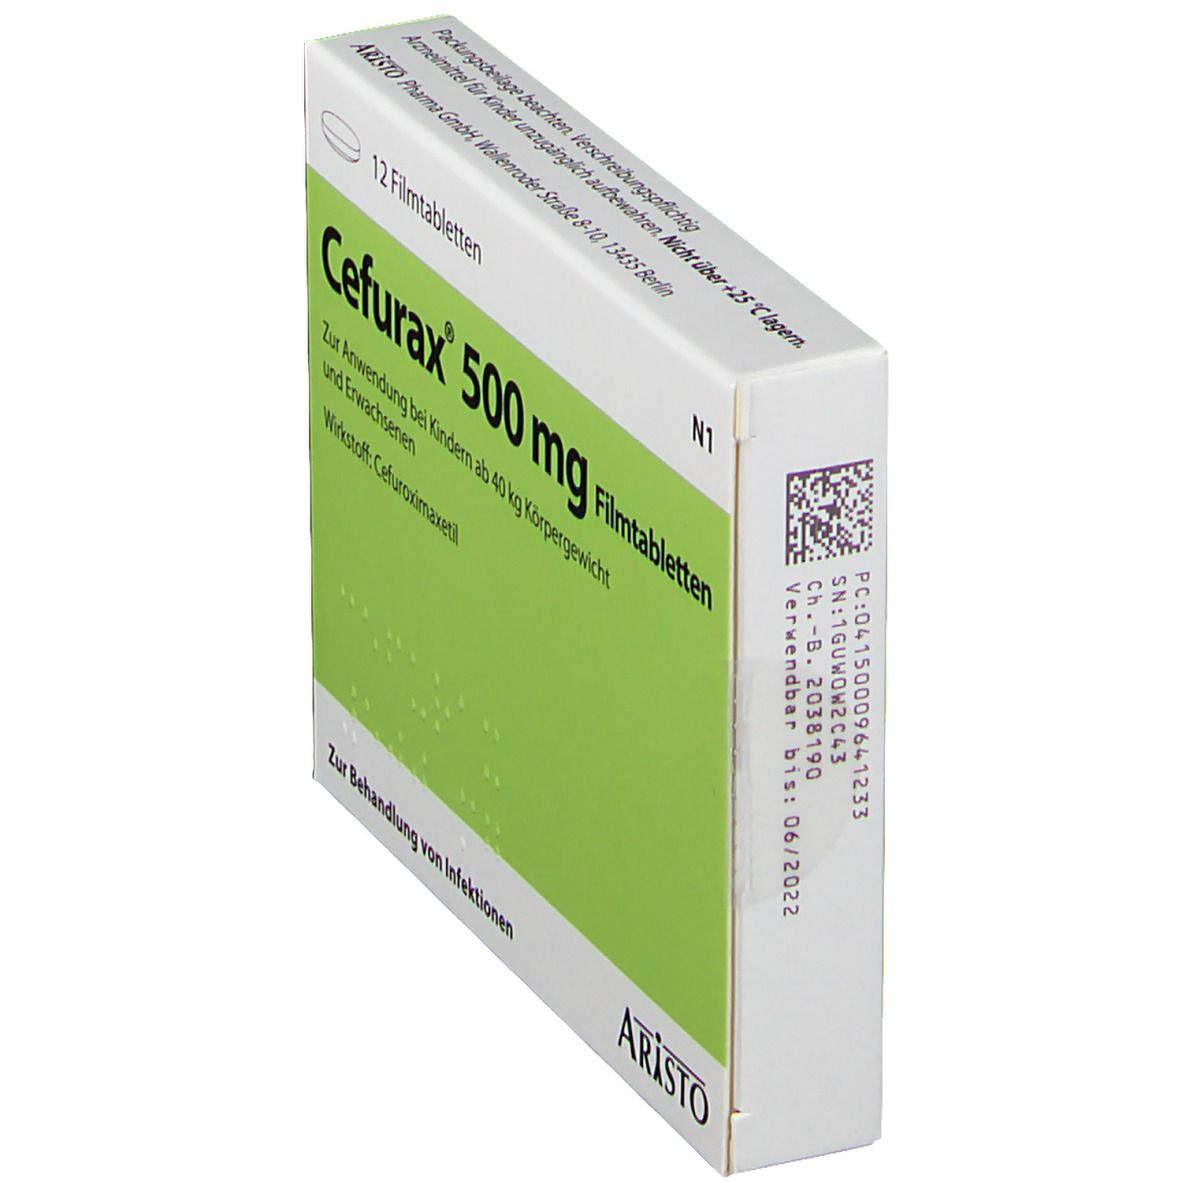 Cefurax® 500 mg